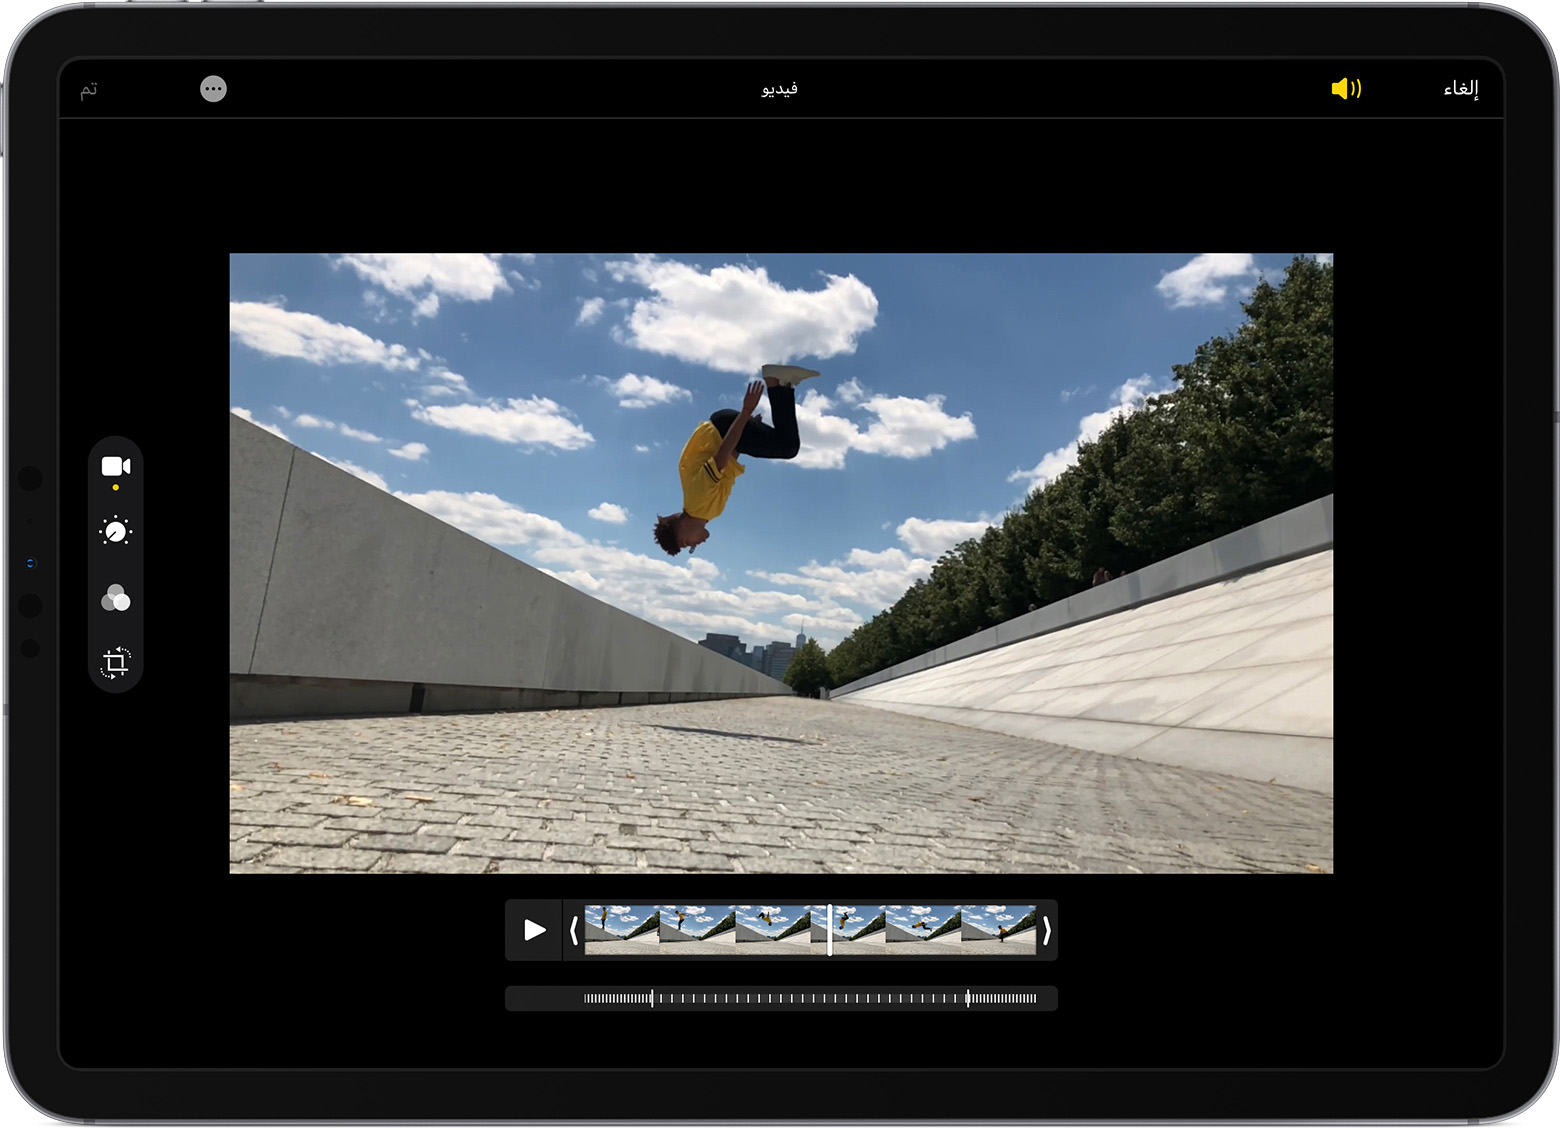 جهاز iPad يعرض إعدادات الحركة البطيئة للفيديو قيد التعديل